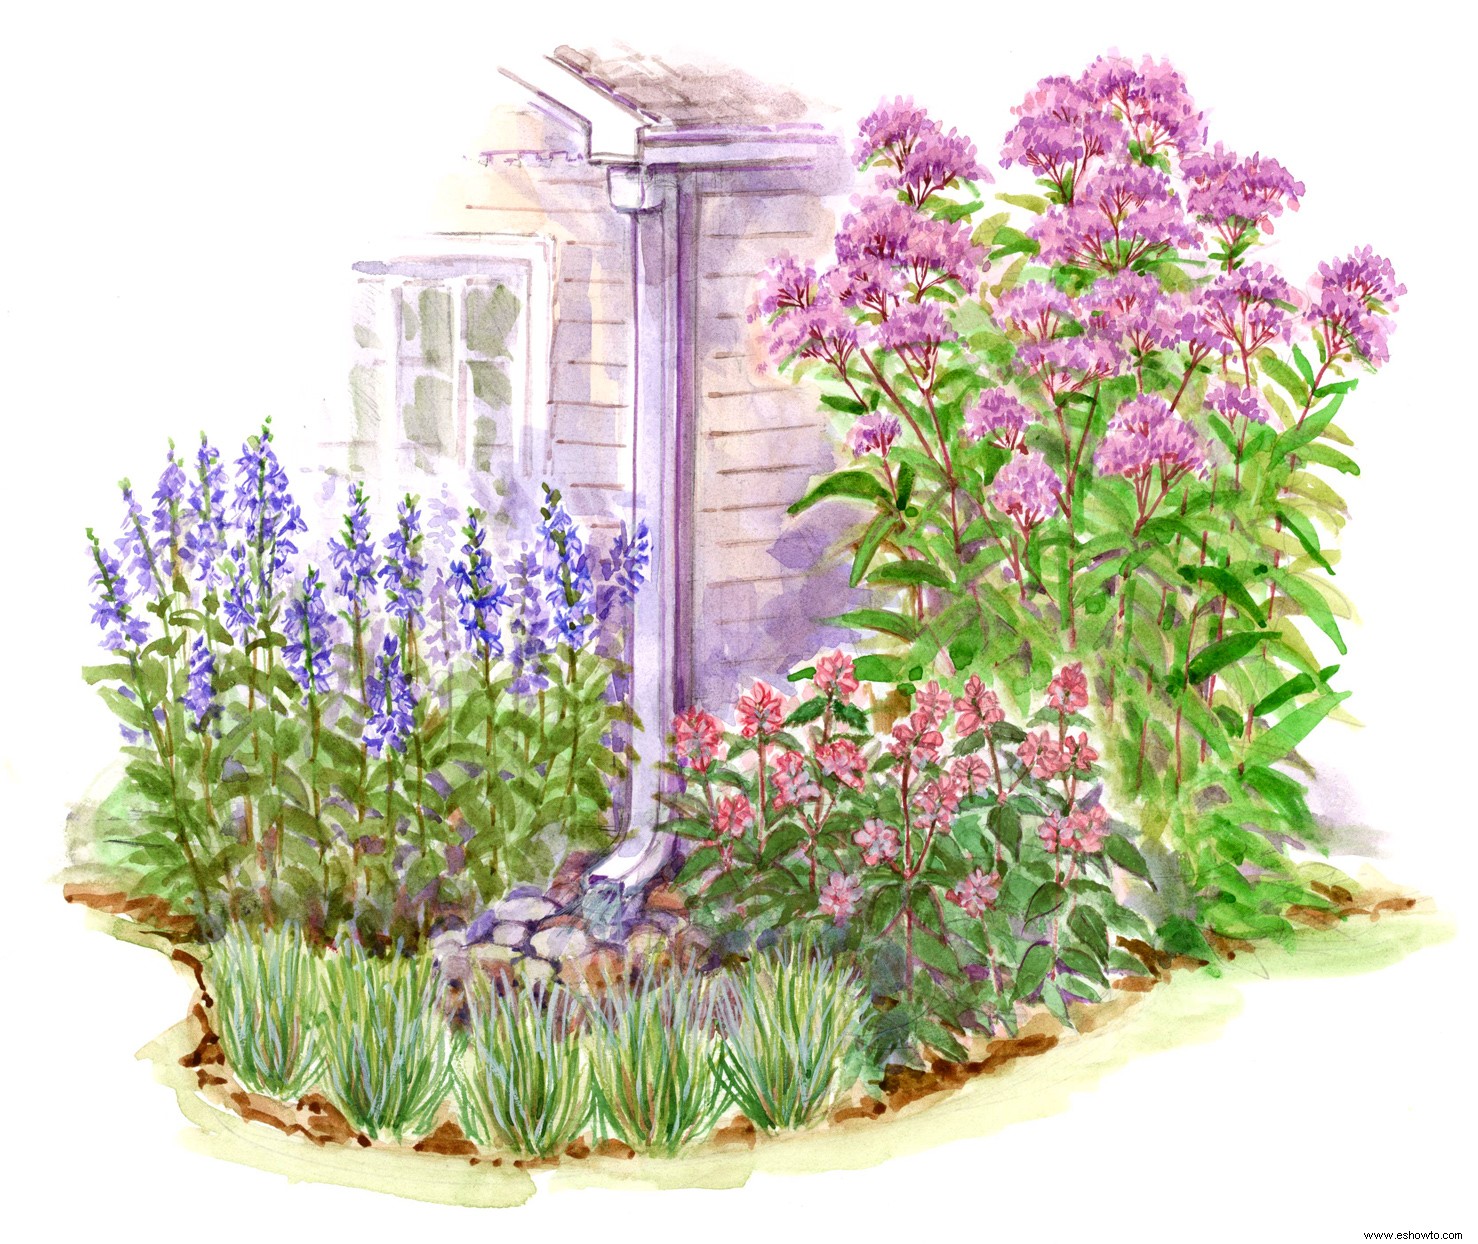 Viste el área alrededor de tu bajante con este sencillo plan de jardín perenne 